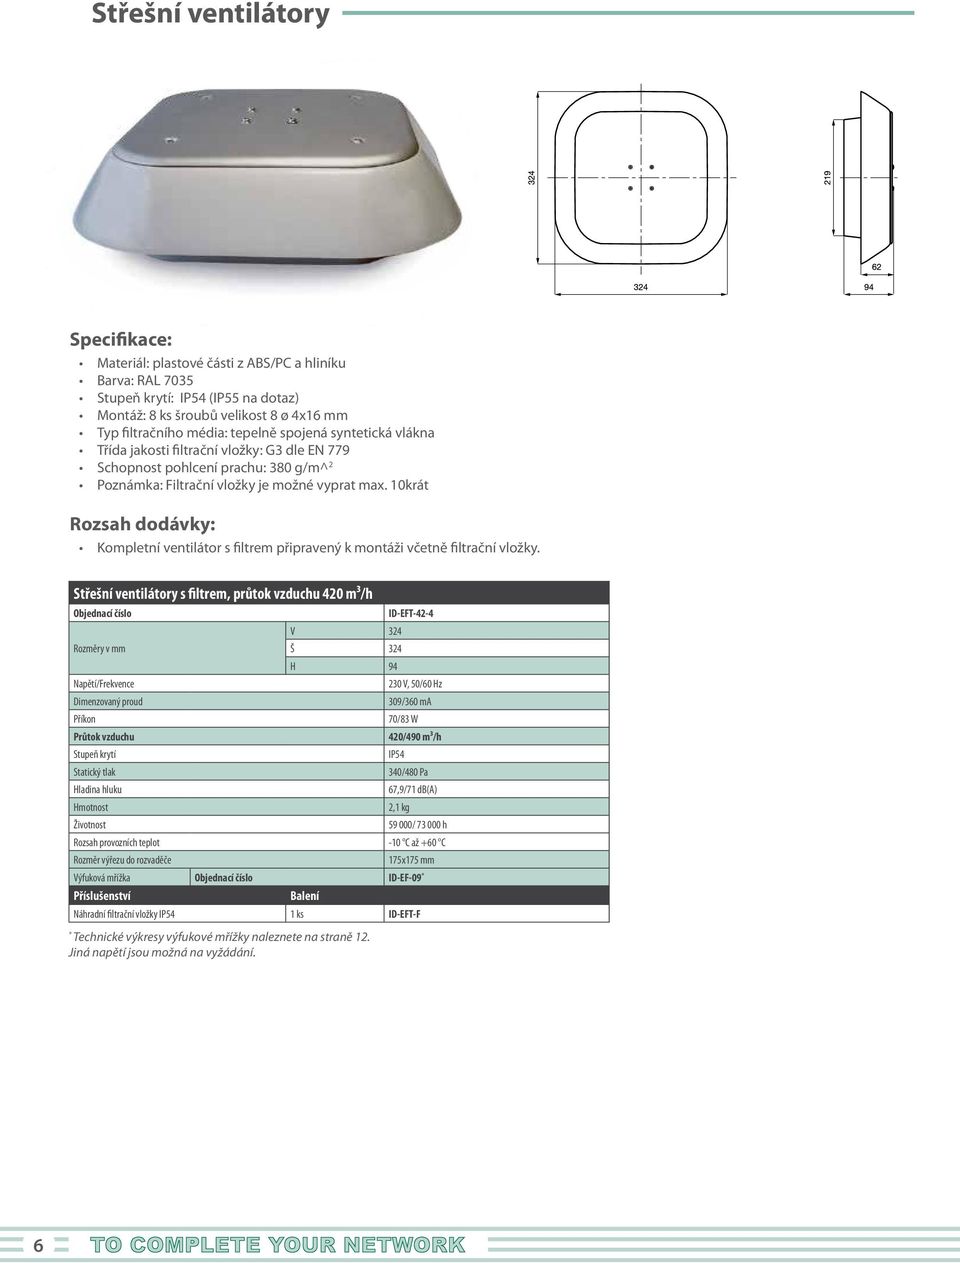 1krát Kompletní ventilátor s filtrem připravený k montáži včetně filtrační vložky.